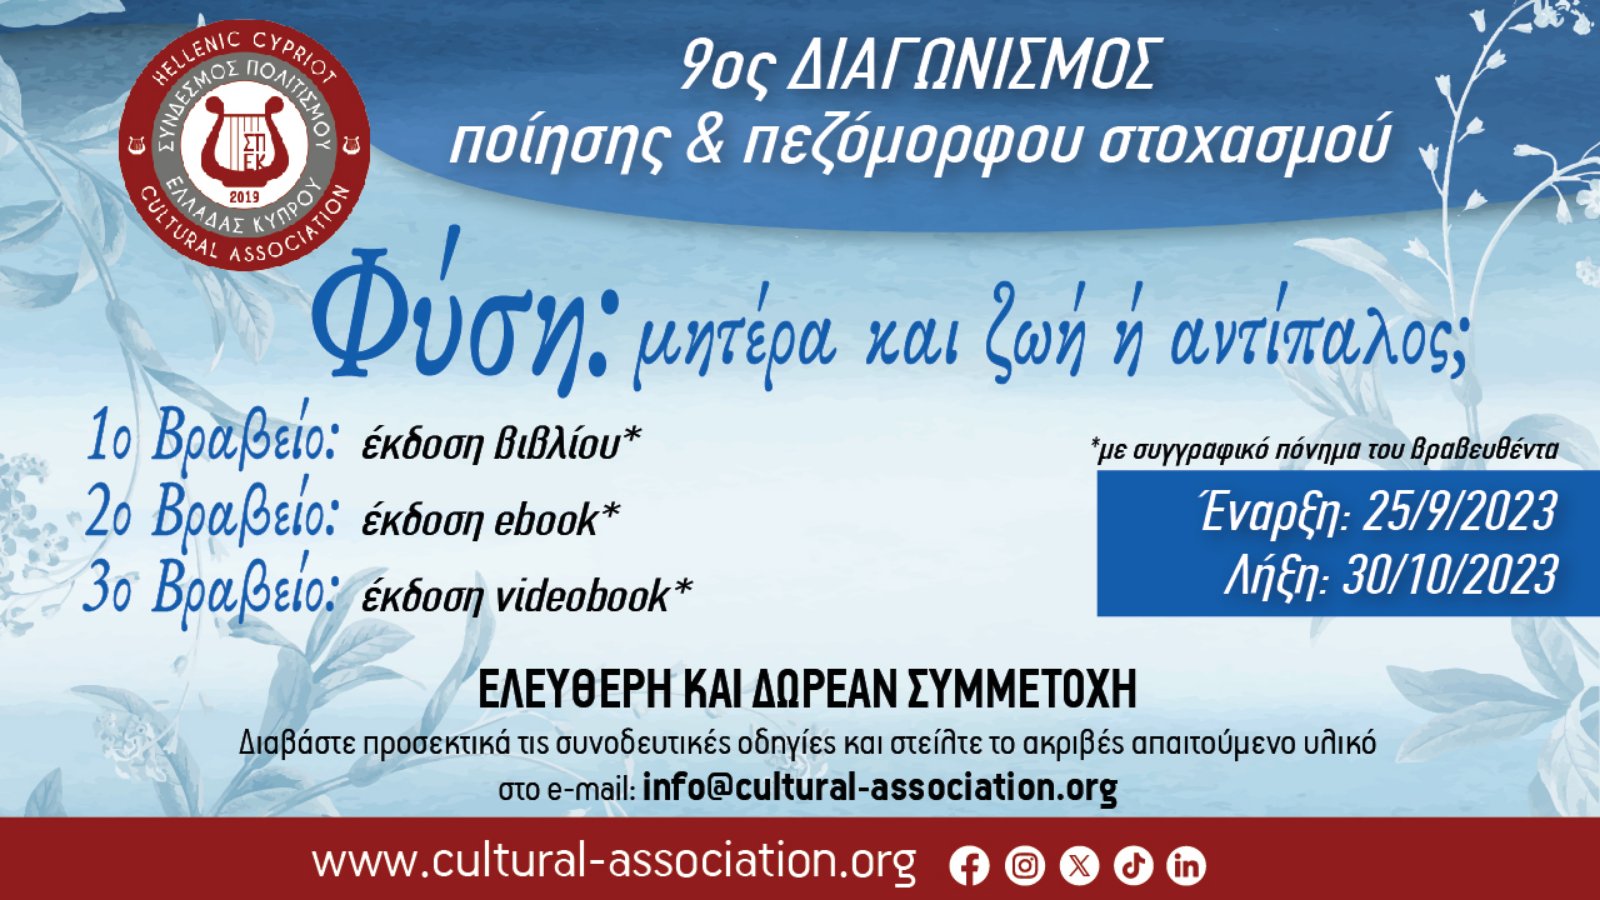 9ος Διαγωνισμός Ποίησης και Πεζόμορφου Στοχασμού με θέμα «Φύση: μητέρα και ζωή ή αντίπαλος;», από τον Σύνδεσμο Πολιτισμού Ελλάδας- Κύπρου